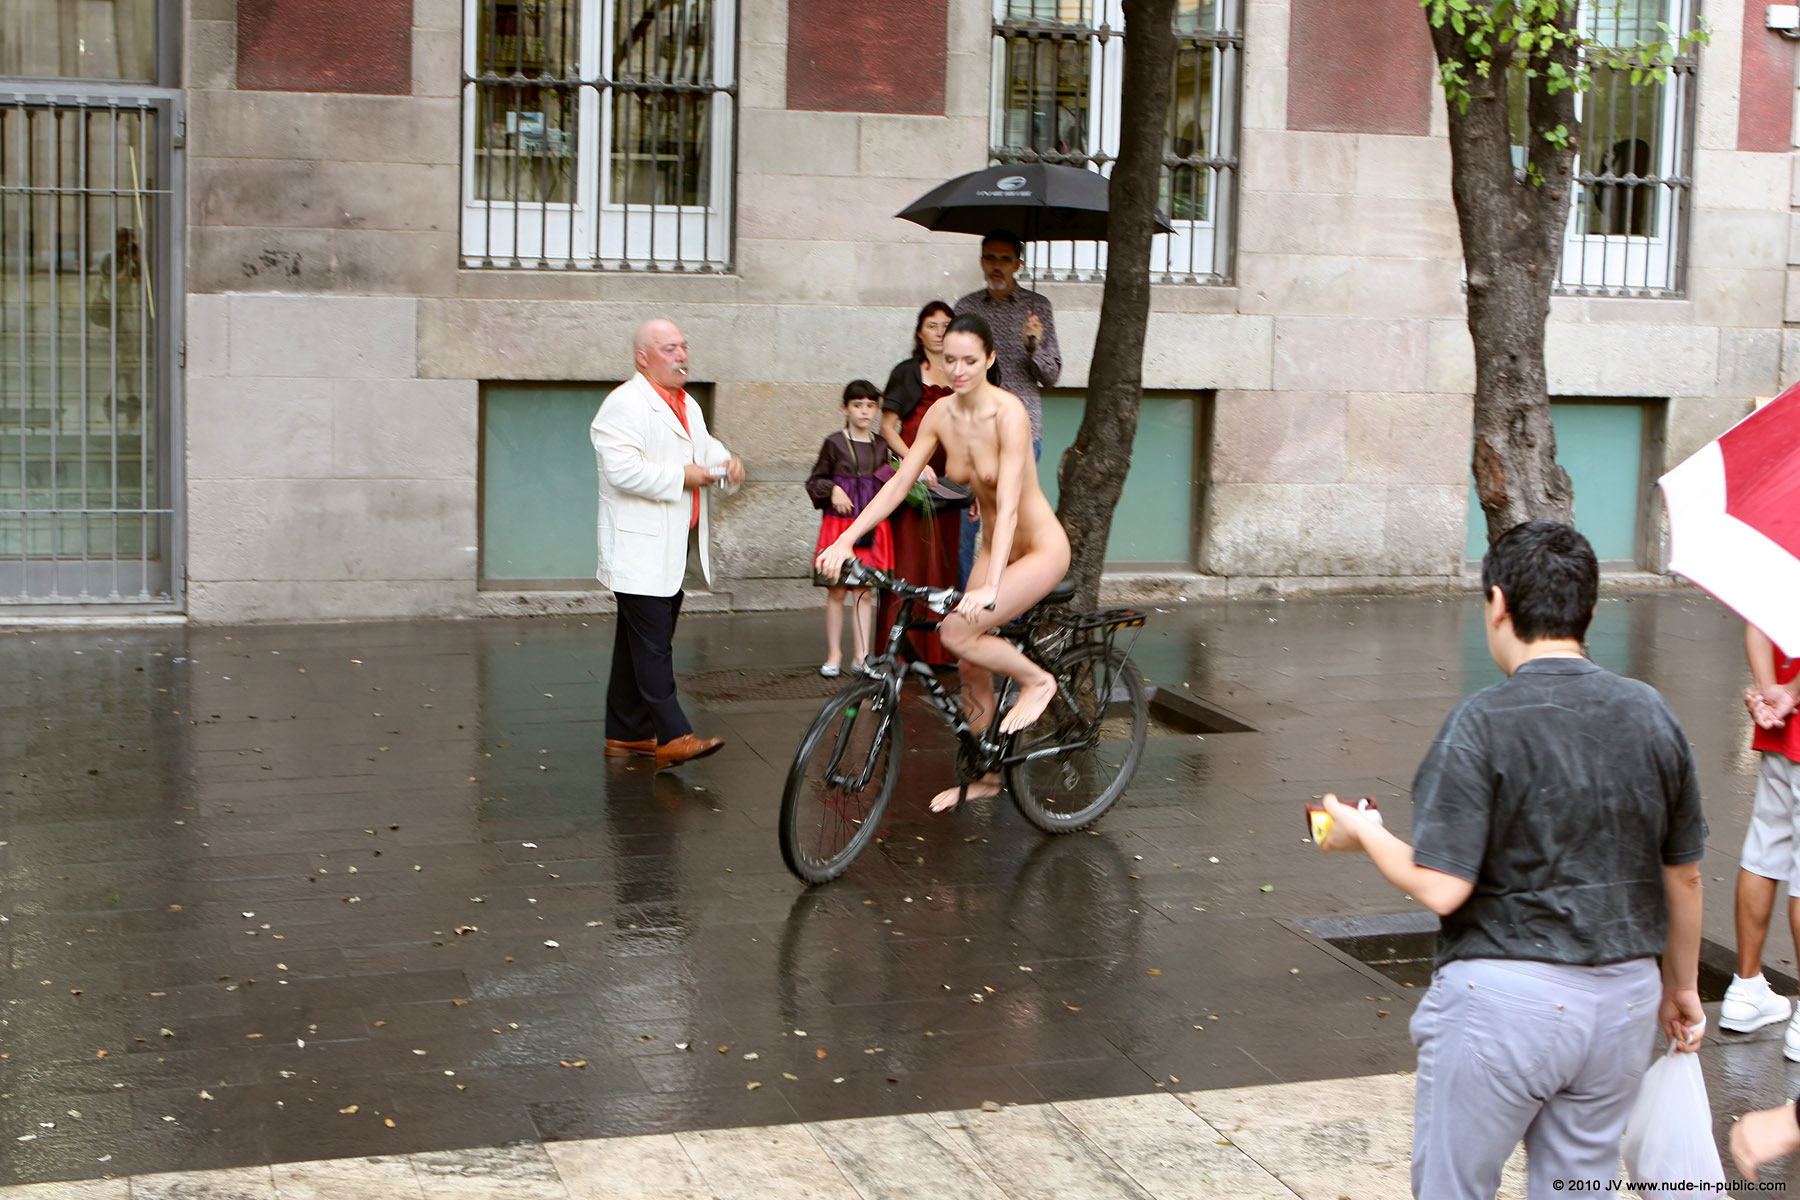 gwen-bike-nude-in-public-15